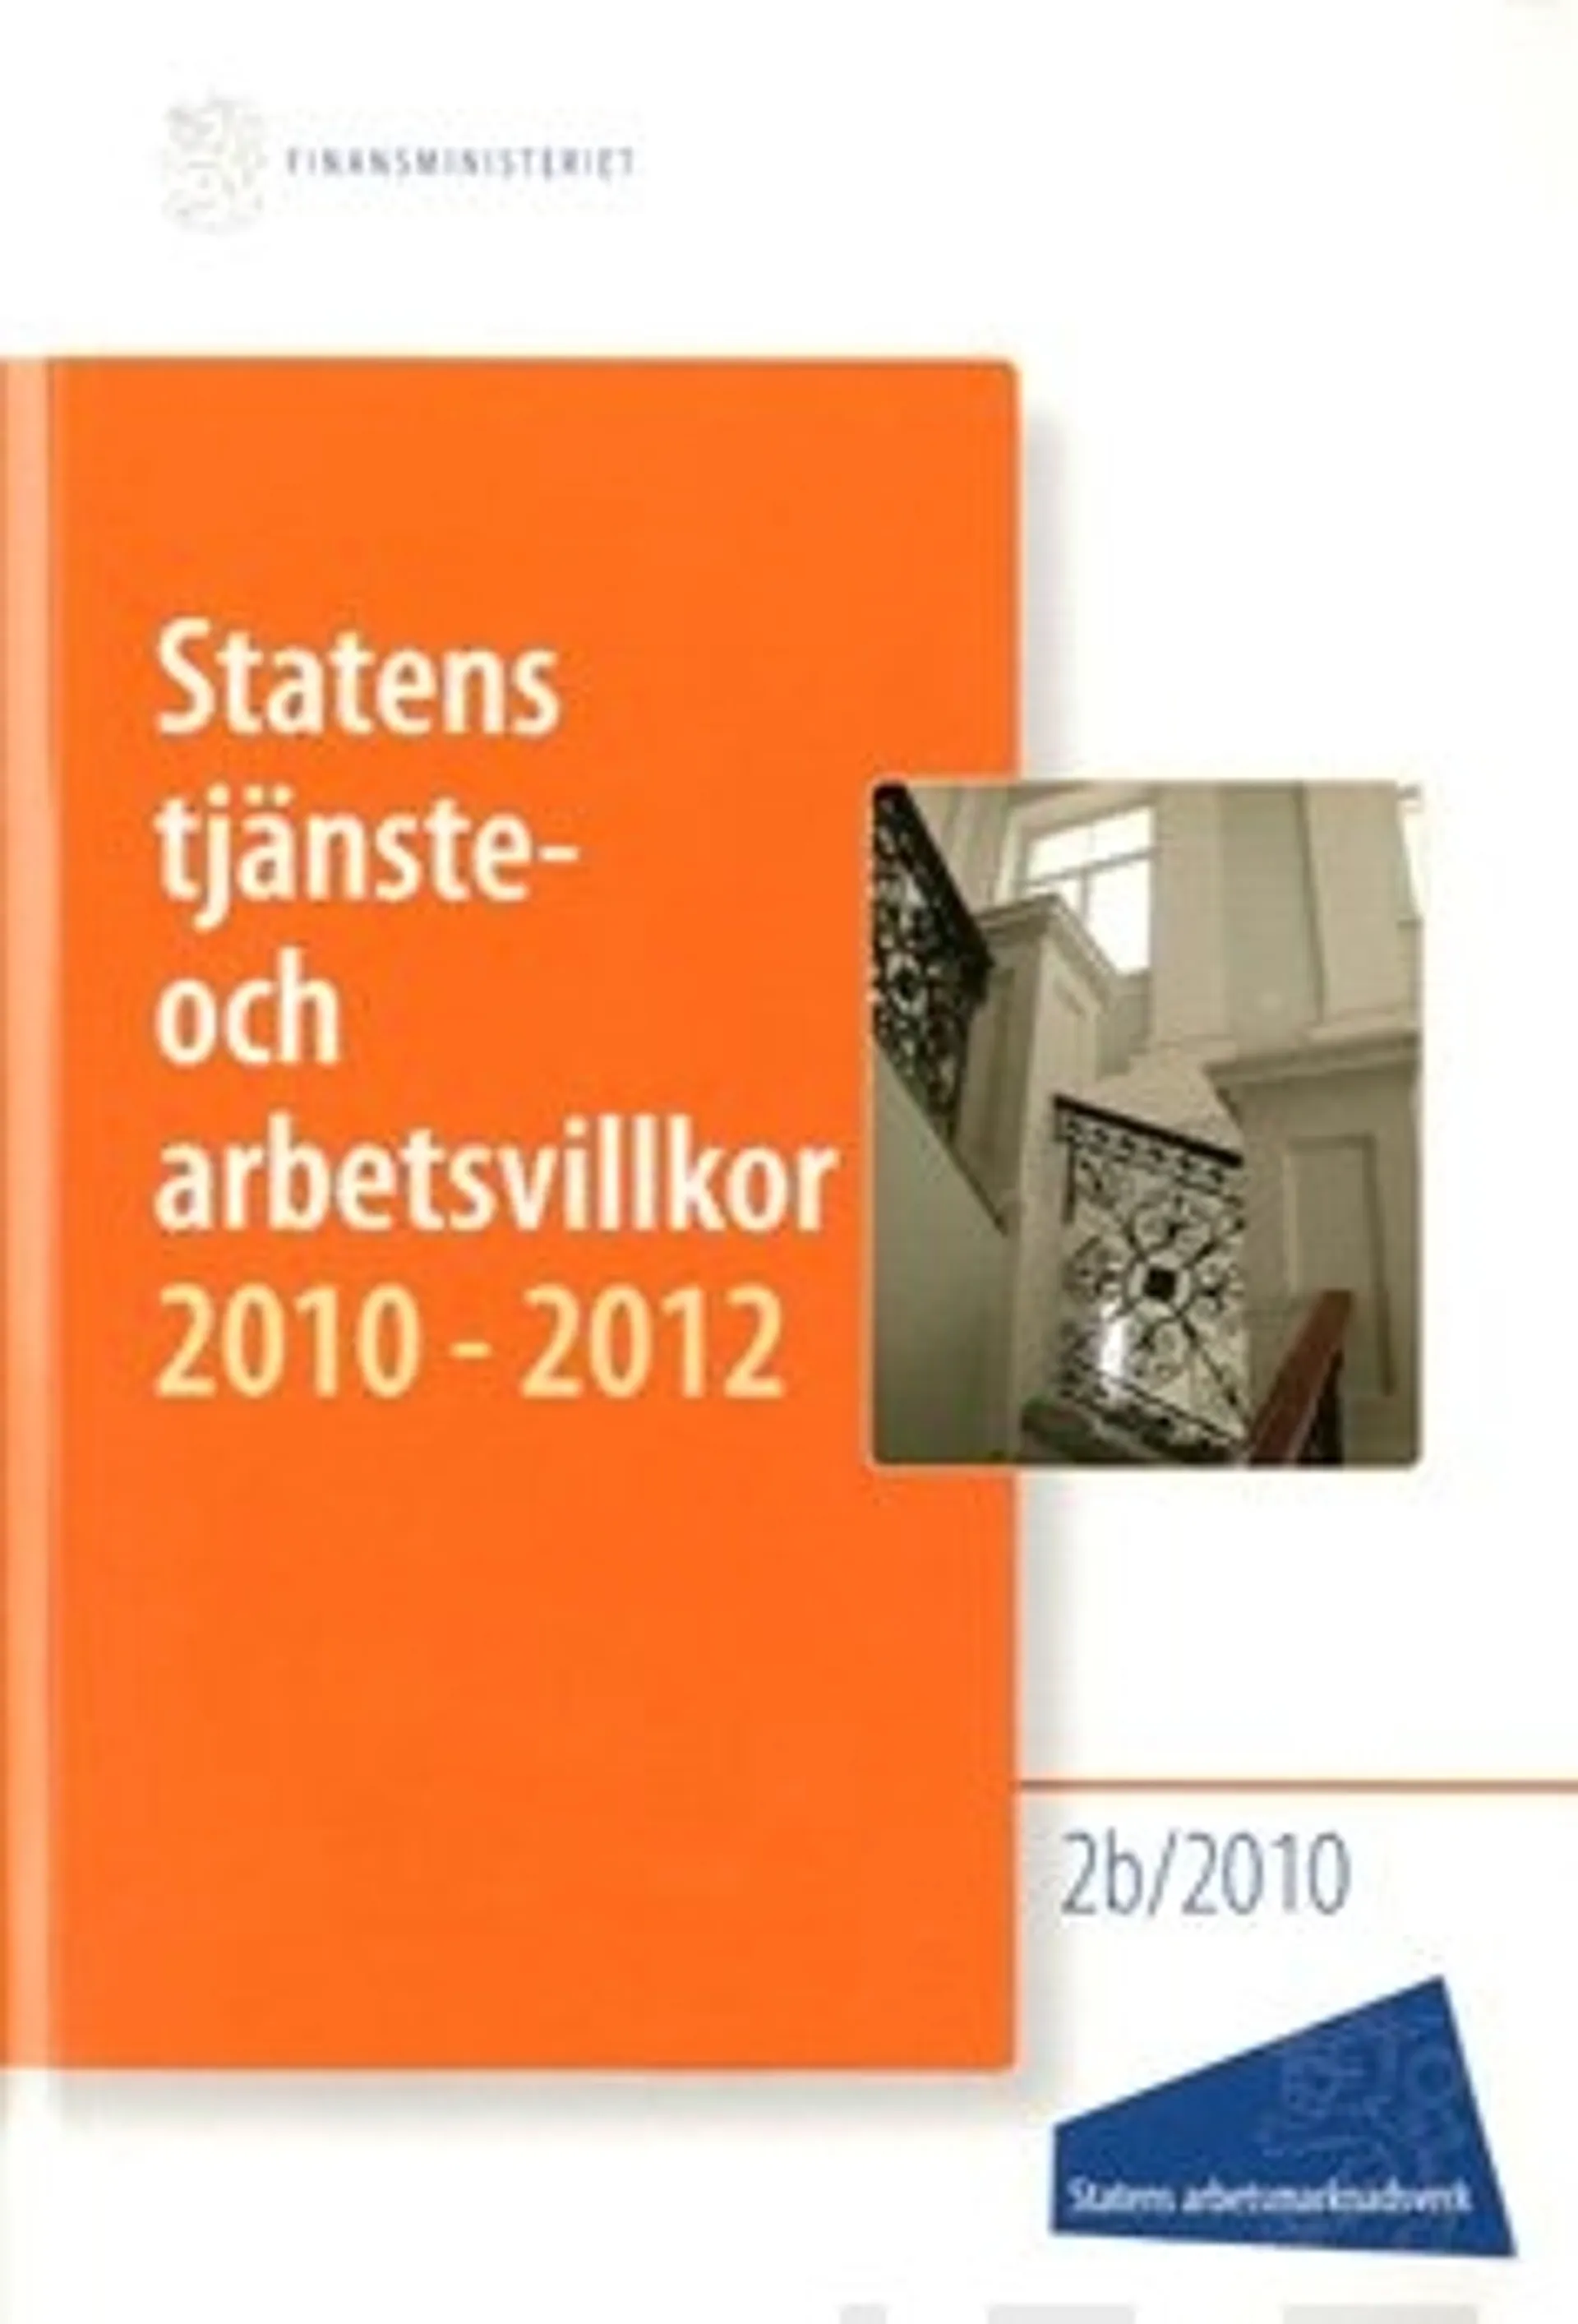 Statens tjänste- och arbetsvillkor 2010-2012